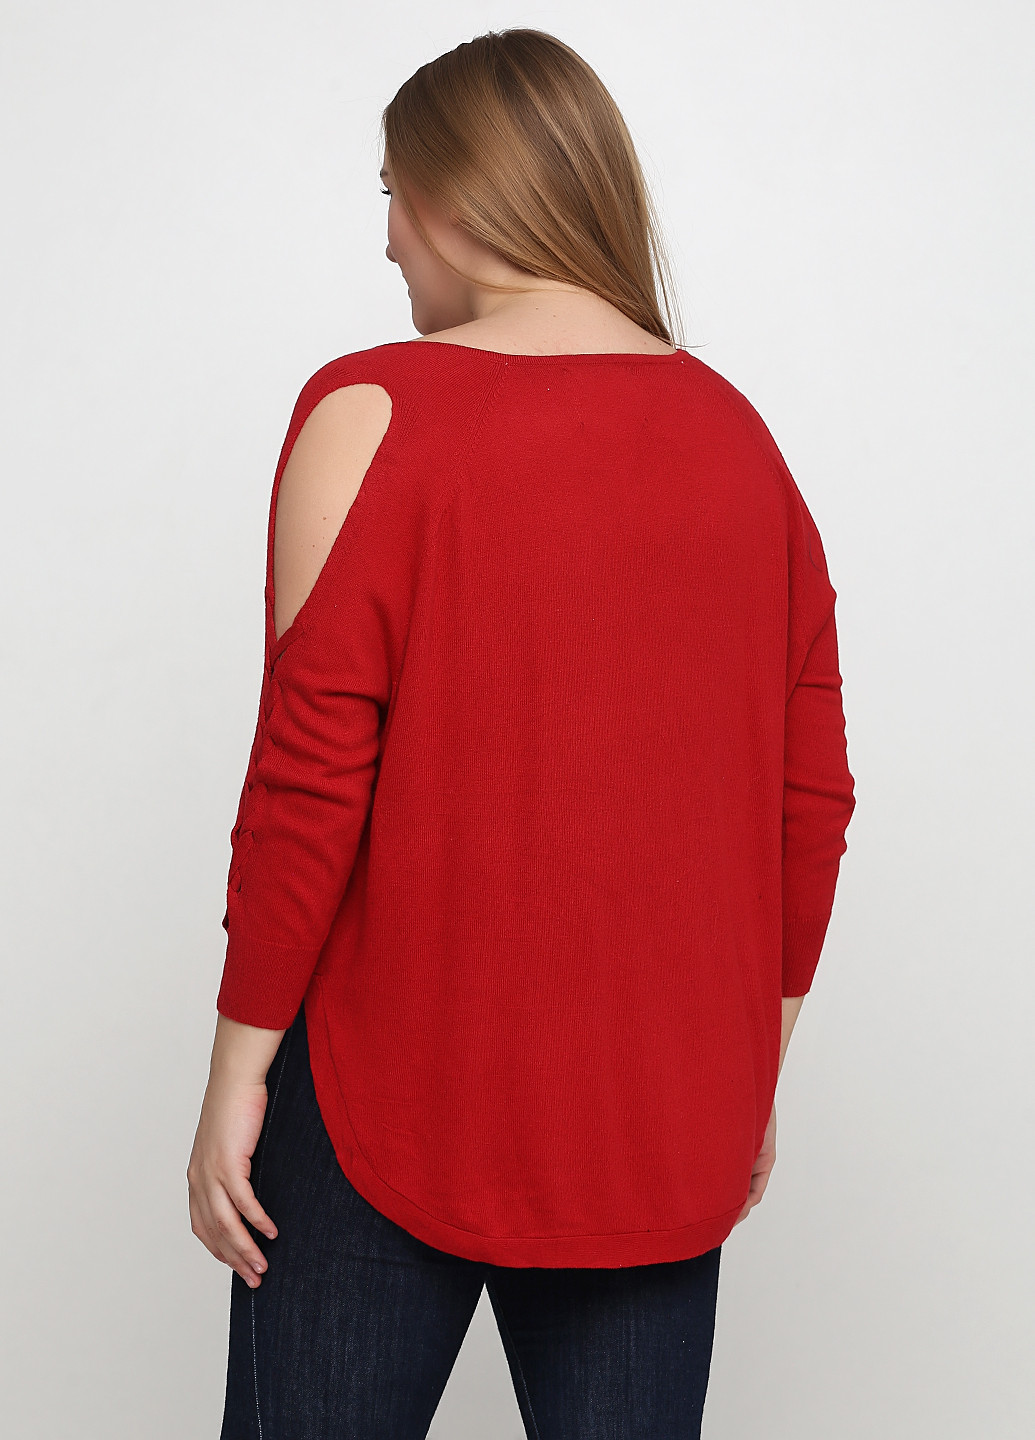 Красный демисезонный пуловер пуловер CHD